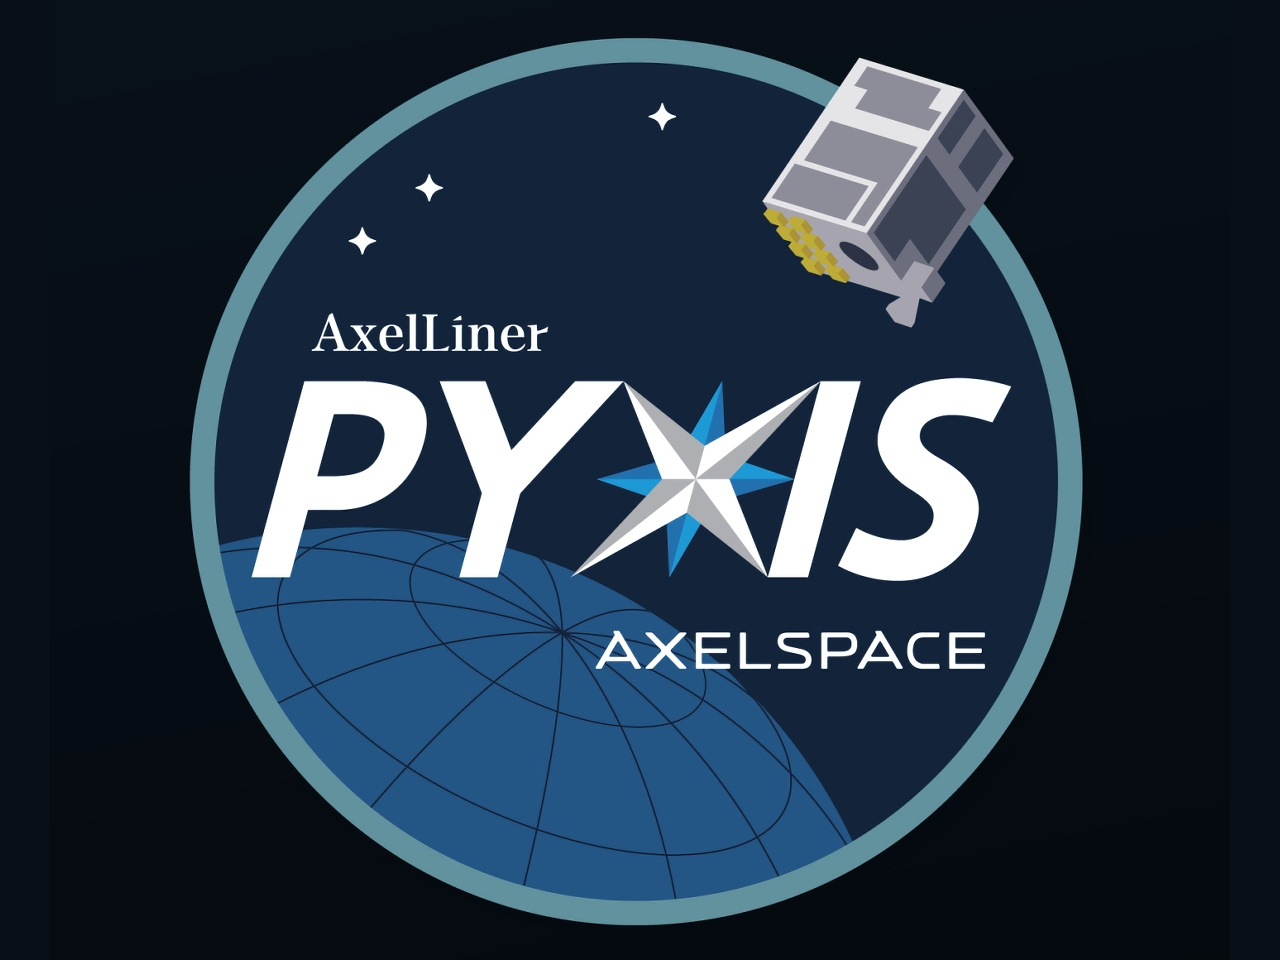 アクセルスペースの汎用衛星バス実証衛星「PYXIS」、3月5日午前6時に打ち上げ